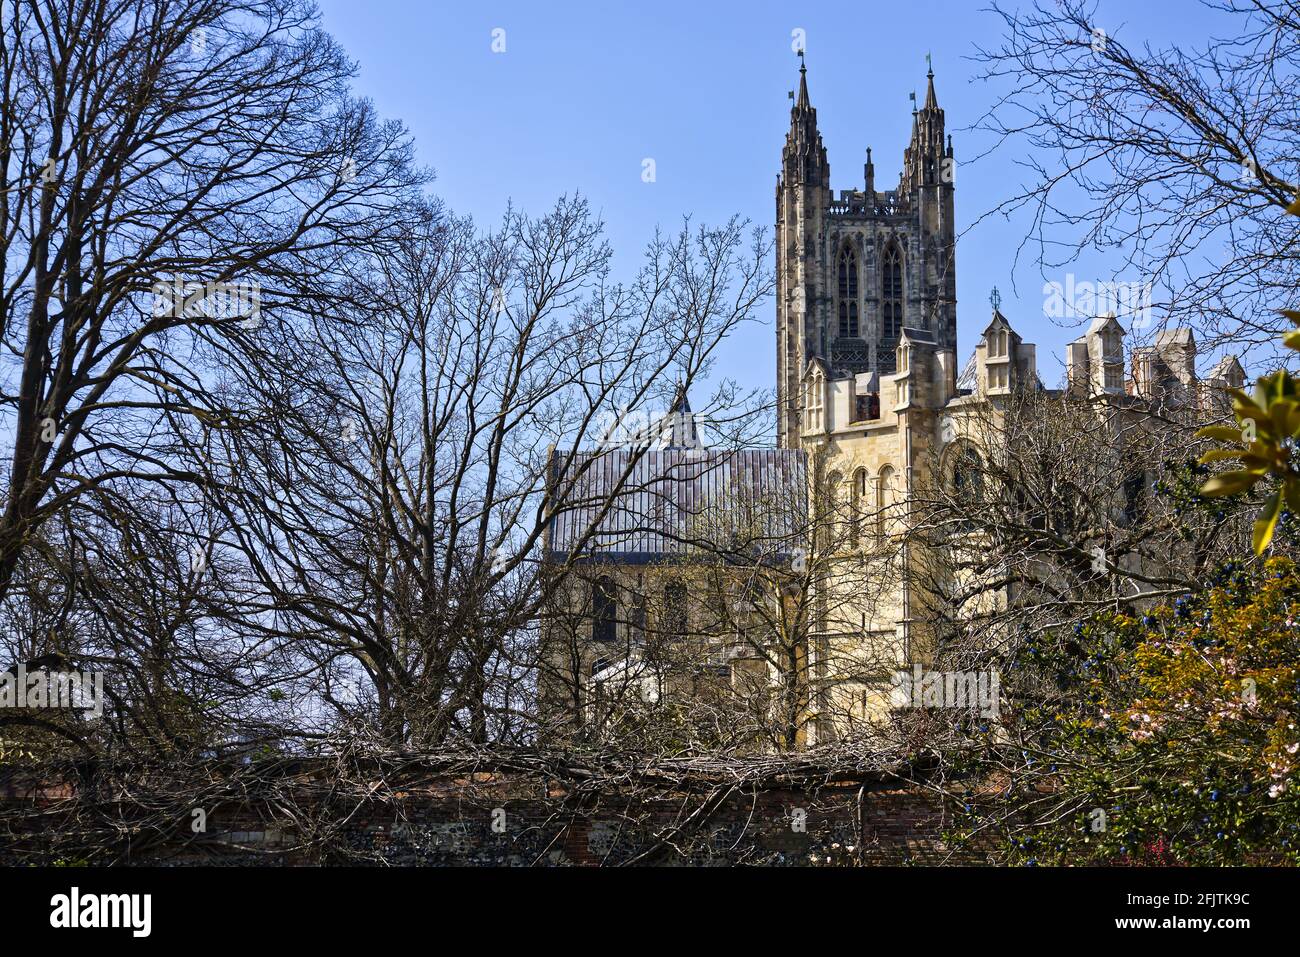 Extrémité est de la cathédrale de Canterbury vue de ses jardins à printemps Banque D'Images